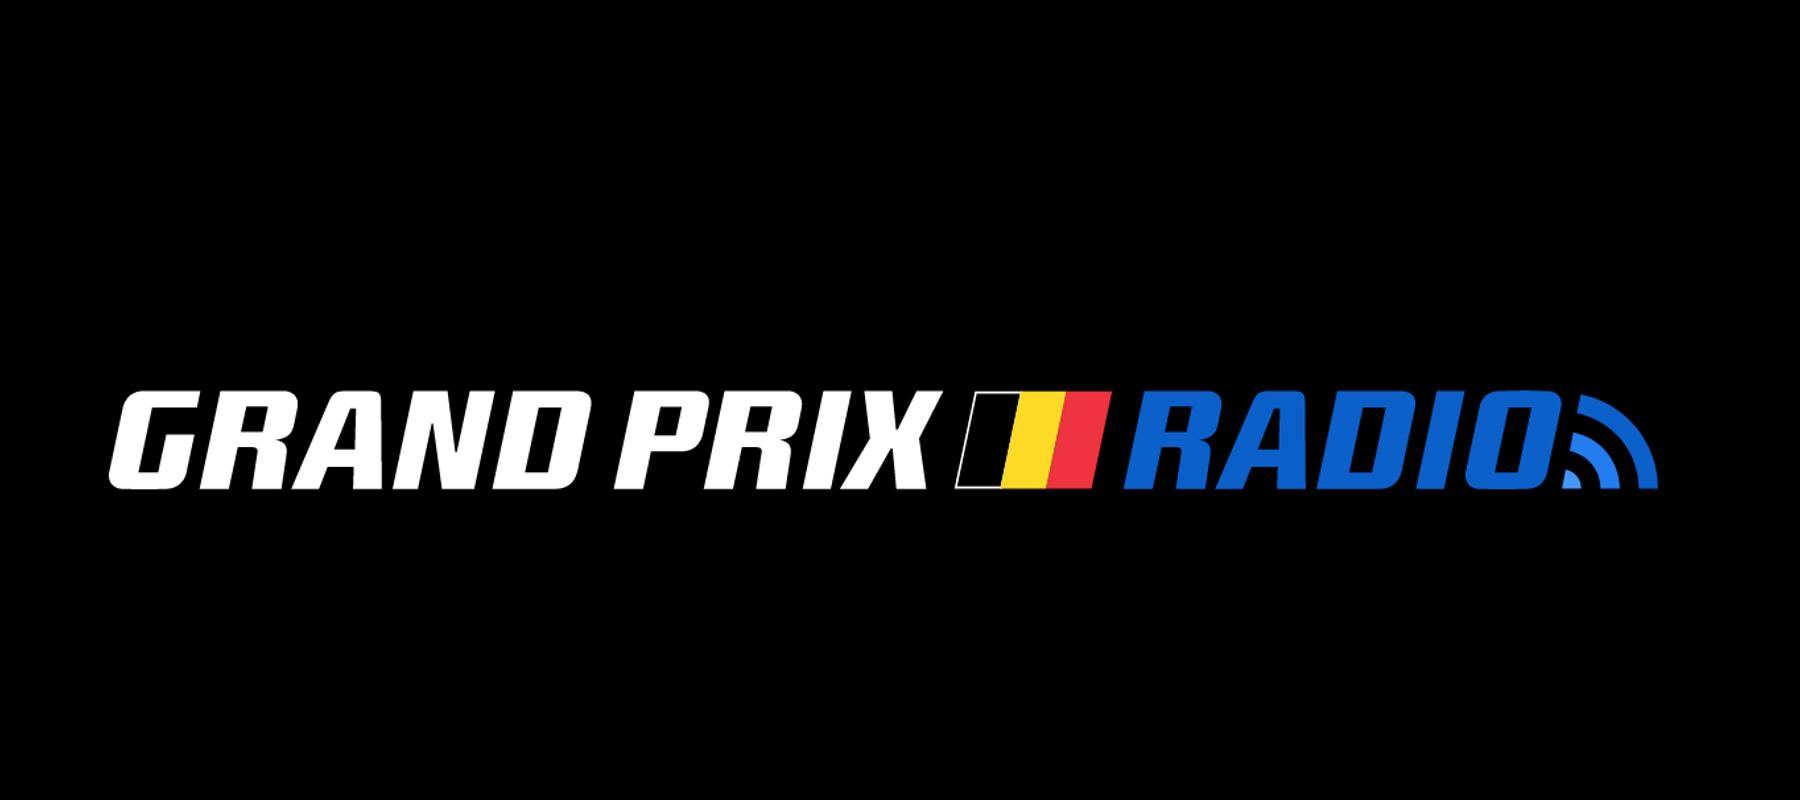 Grand Prix Radio verhuist naar België